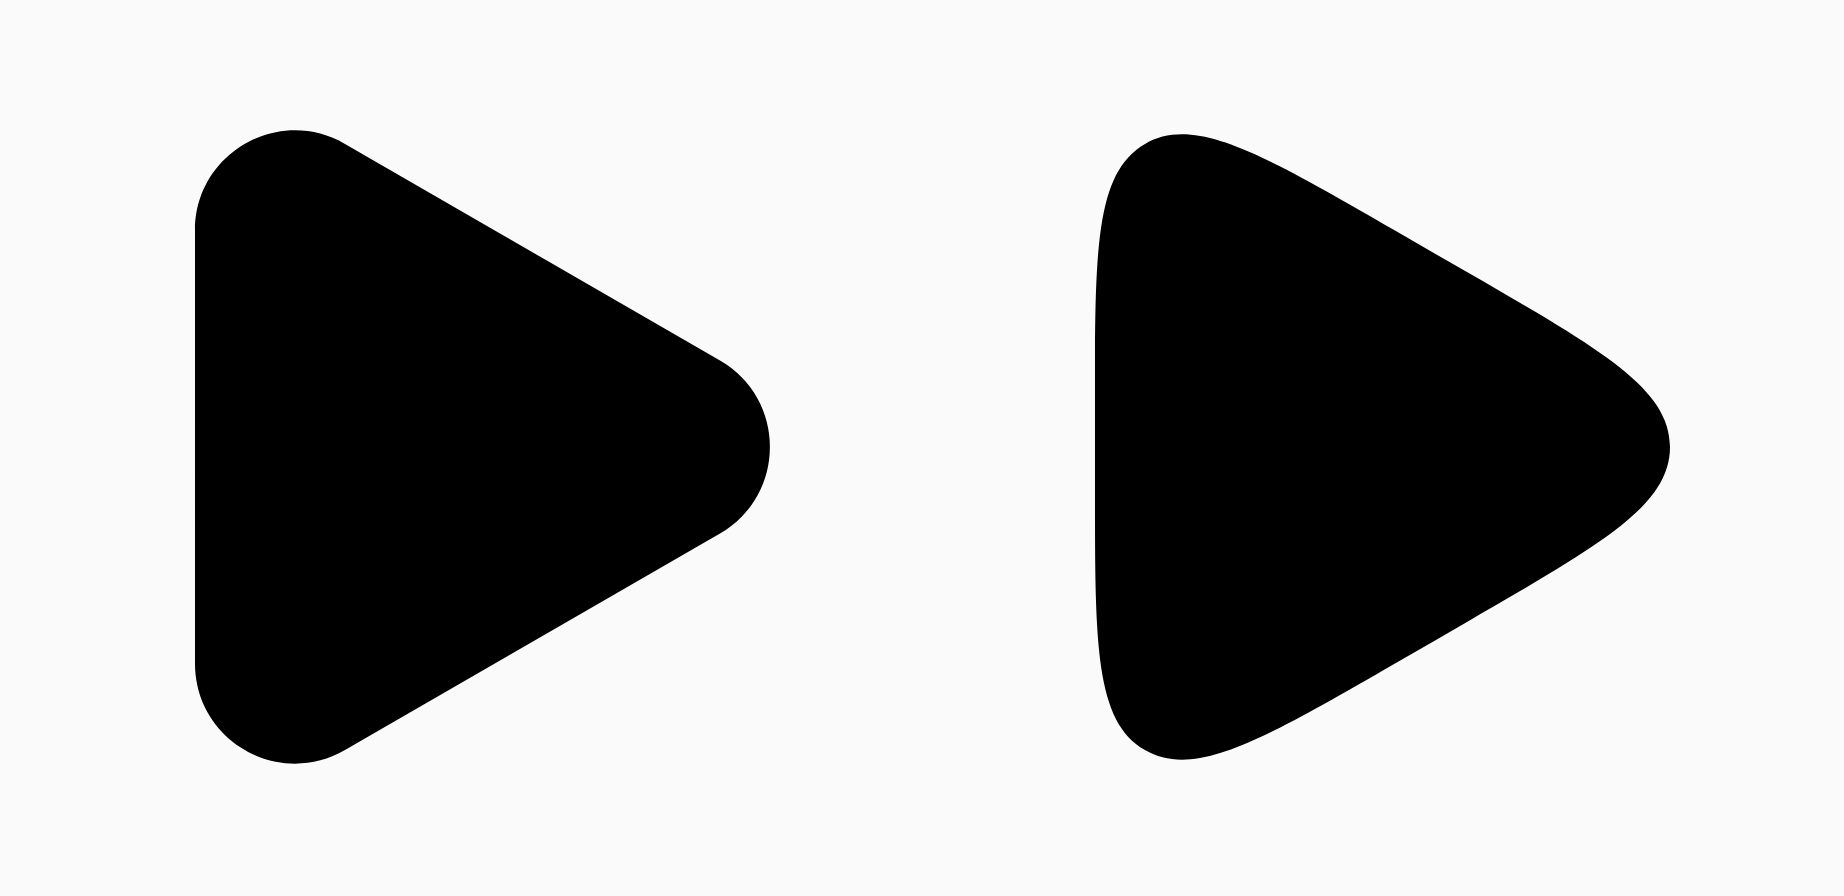 दो काले त्रिभुज, जो स्मूदिंग में अंतर दिखाते हैं
पैरामीटर.